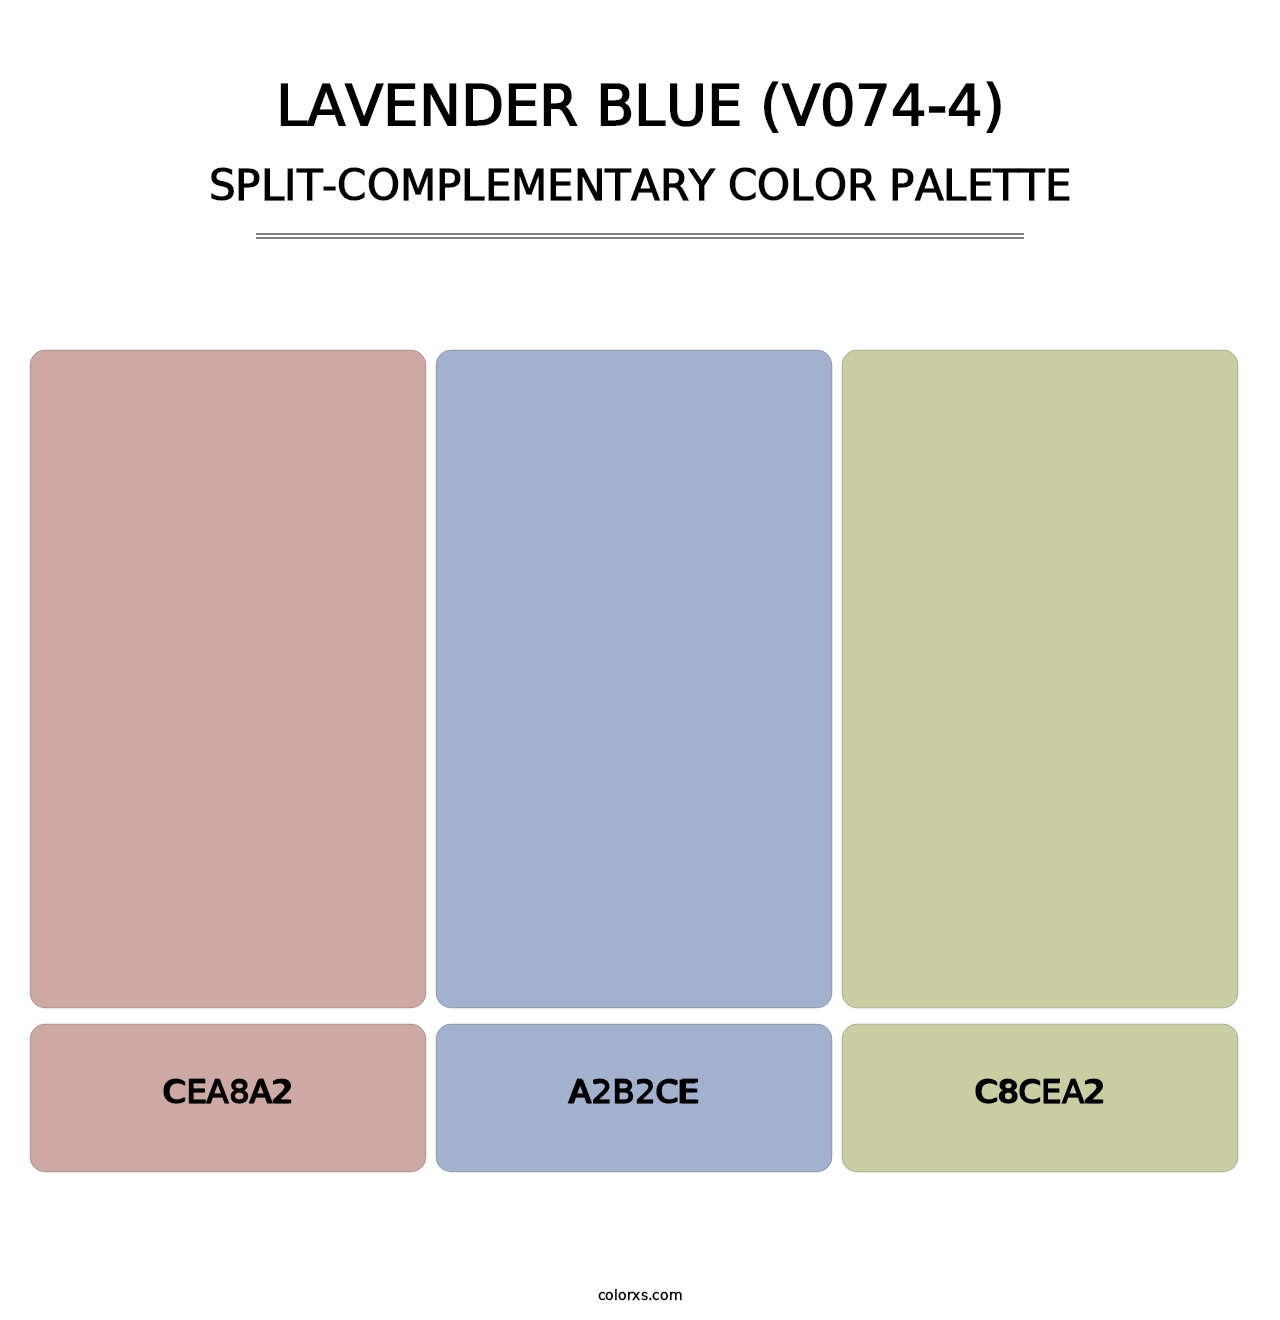 Lavender Blue (V074-4) - Split-Complementary Color Palette